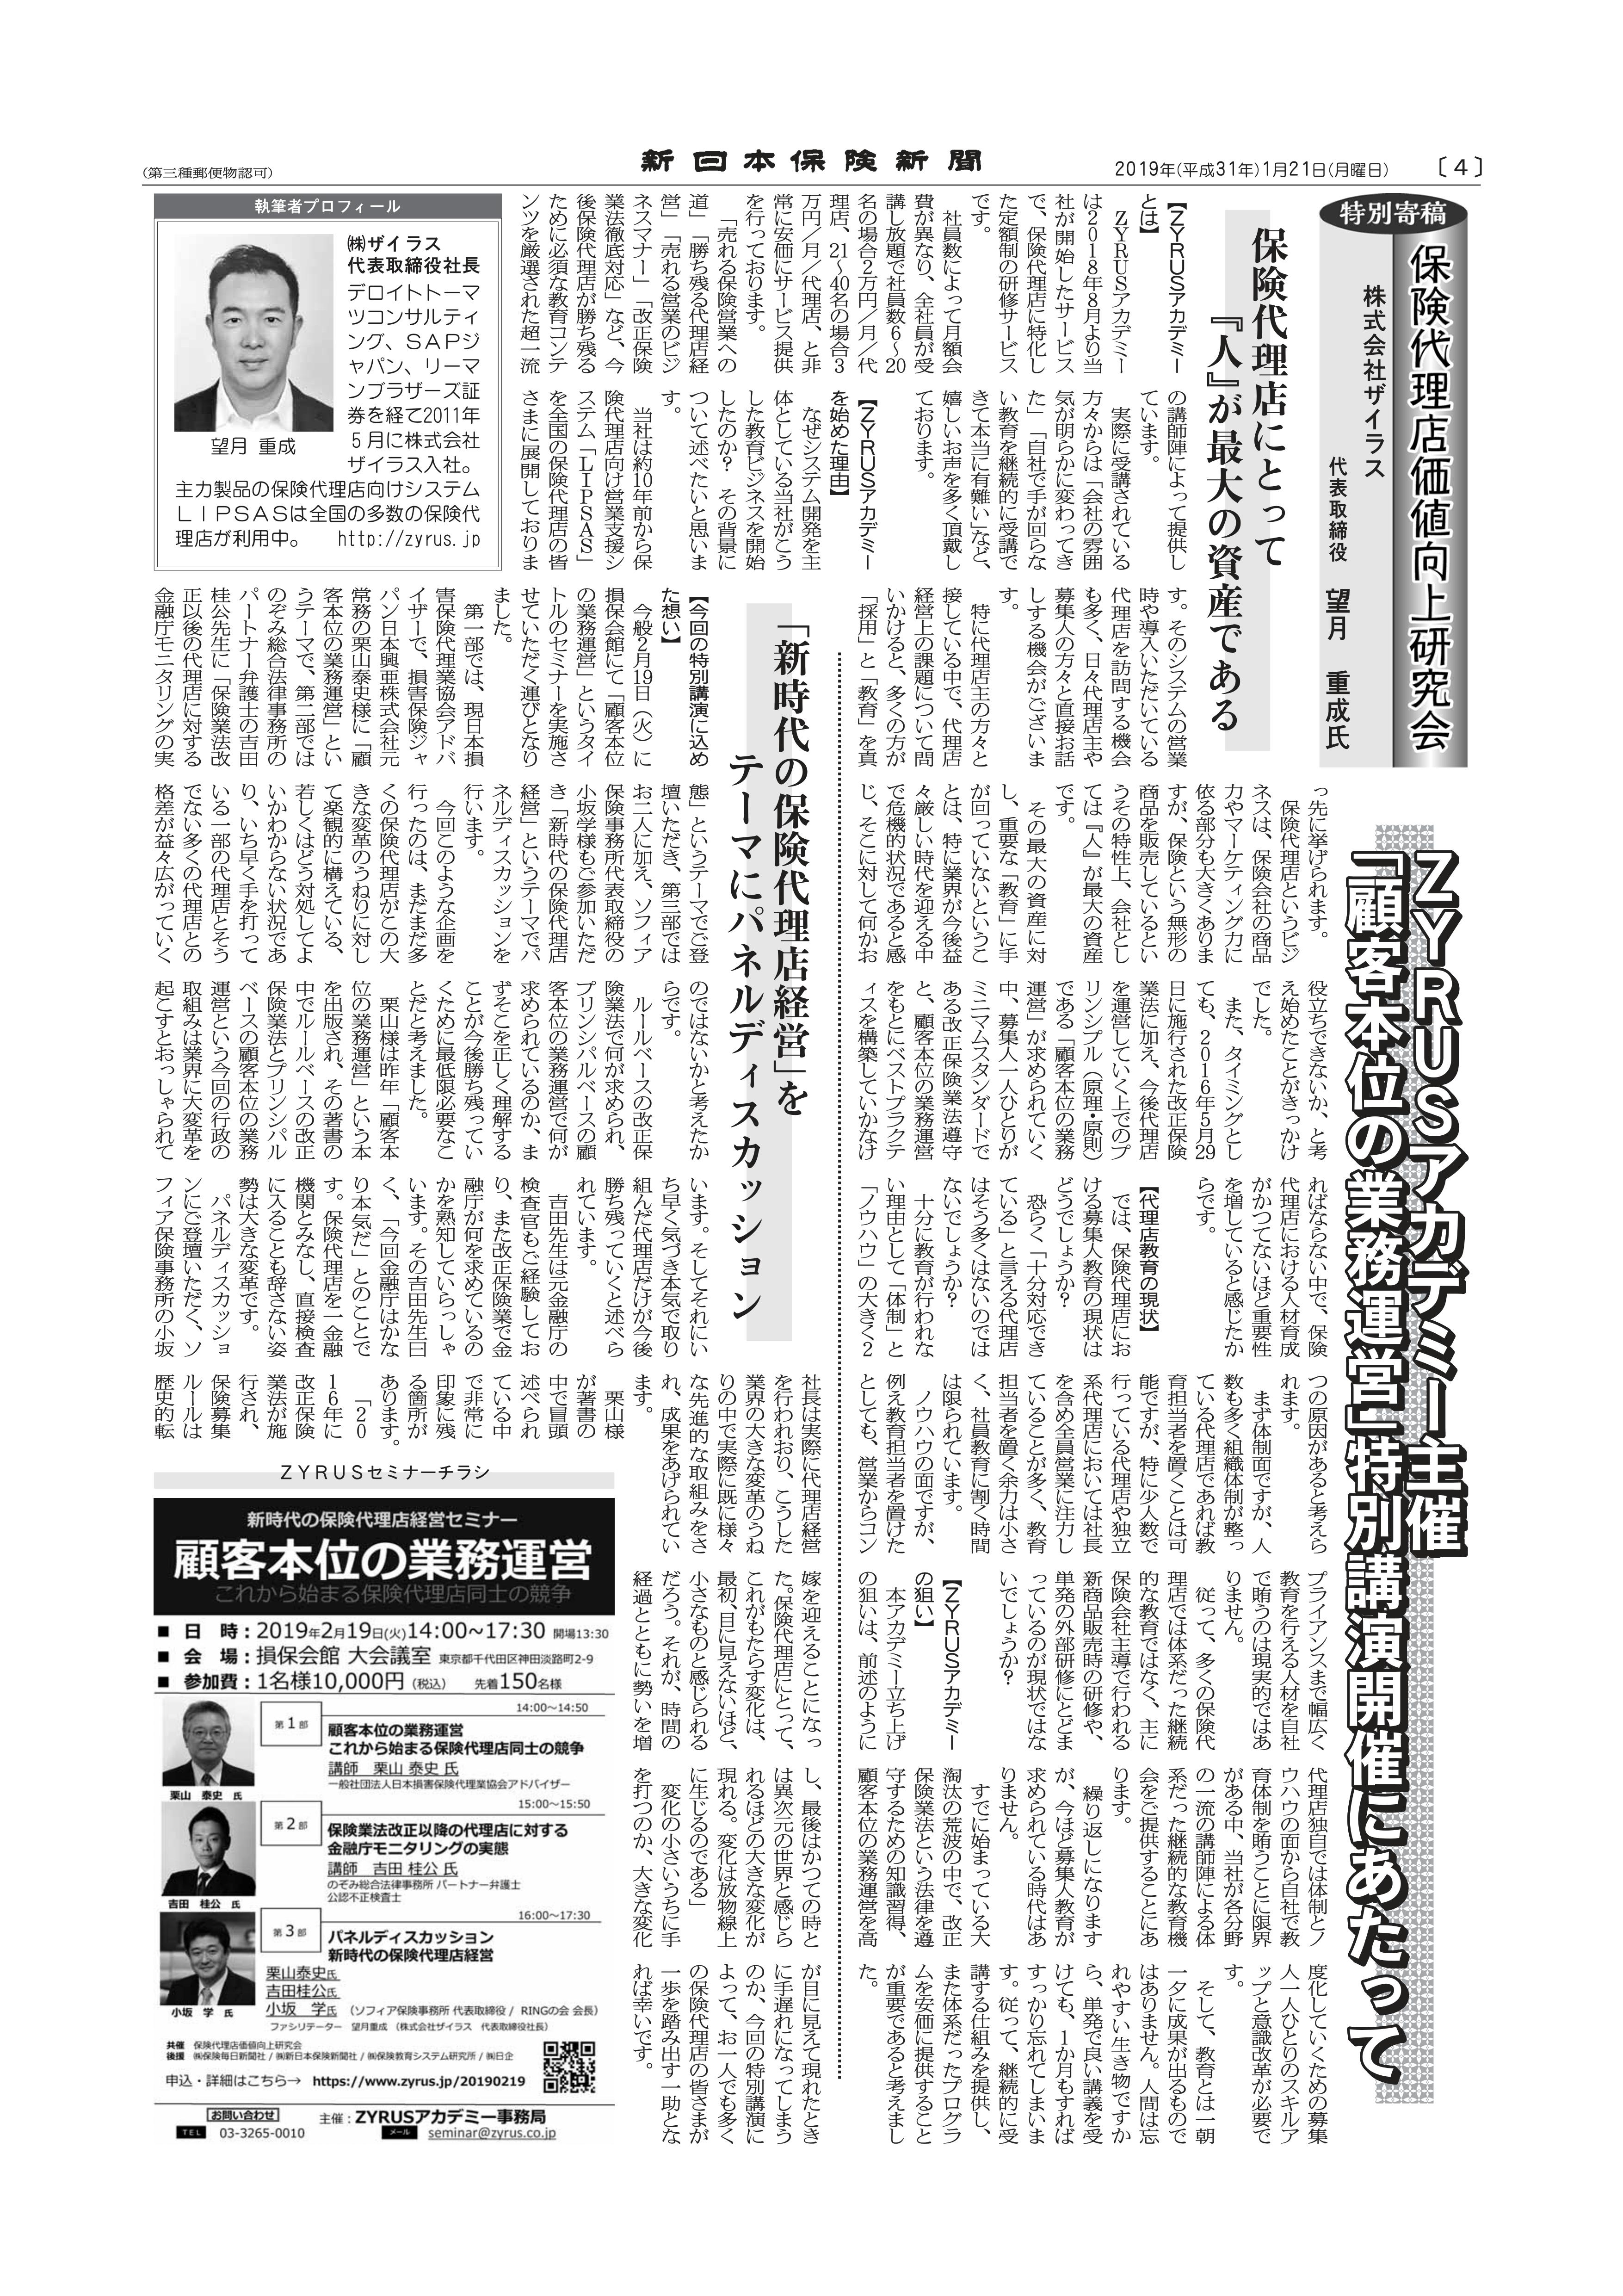 2019.1.21 新日本保険新聞記事